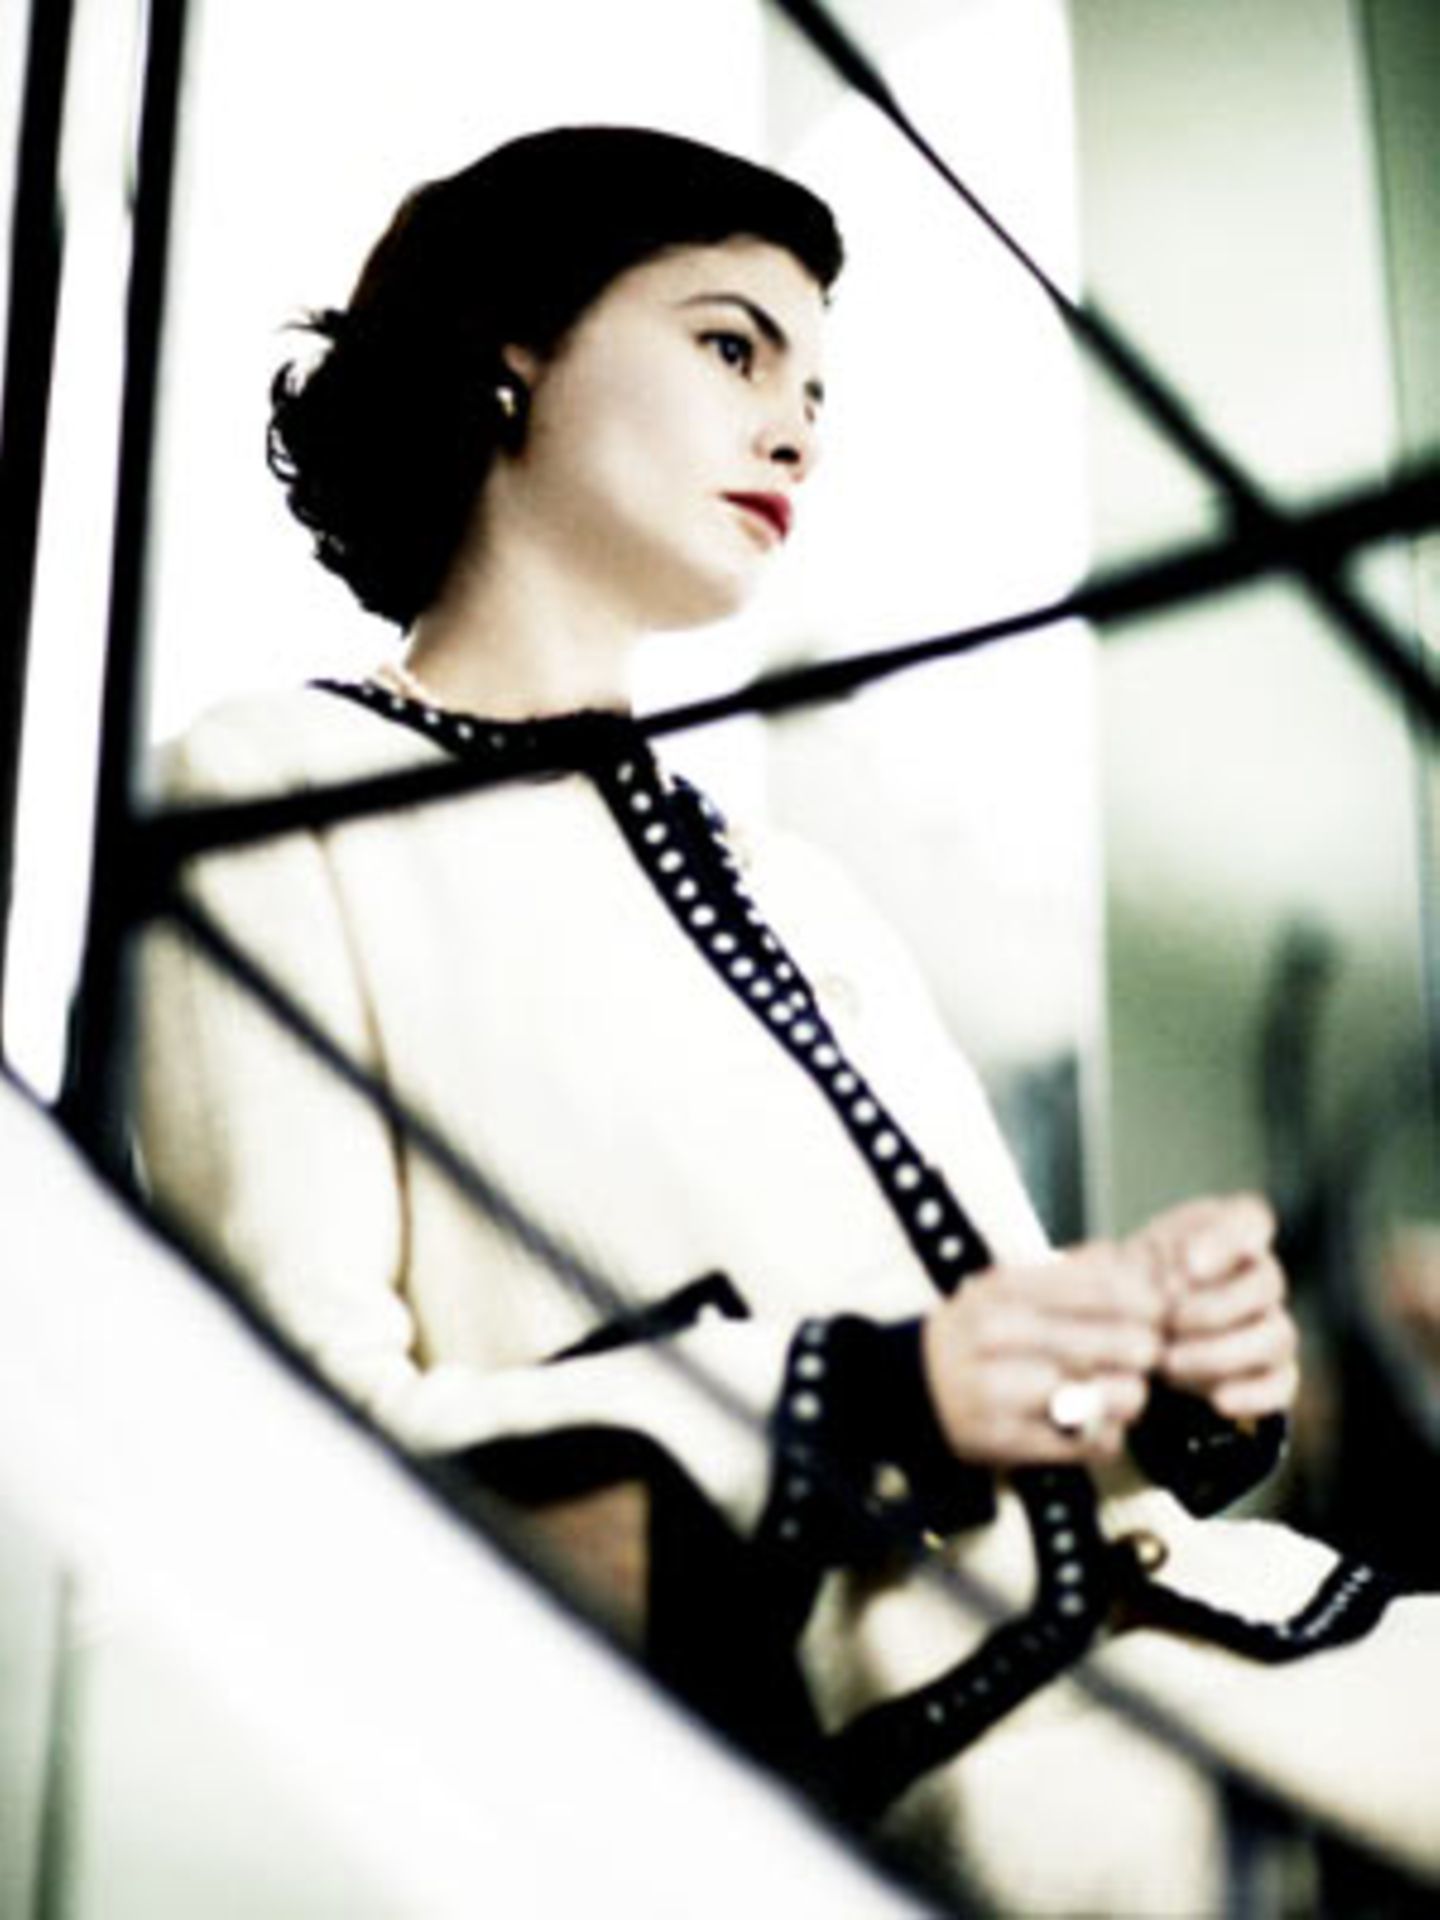 Im Kino: Coco Chanel - Der Beginn einer Leidenschaft Coco Chanel (Audrey Tautou) bei ihrer ersten Modenschau